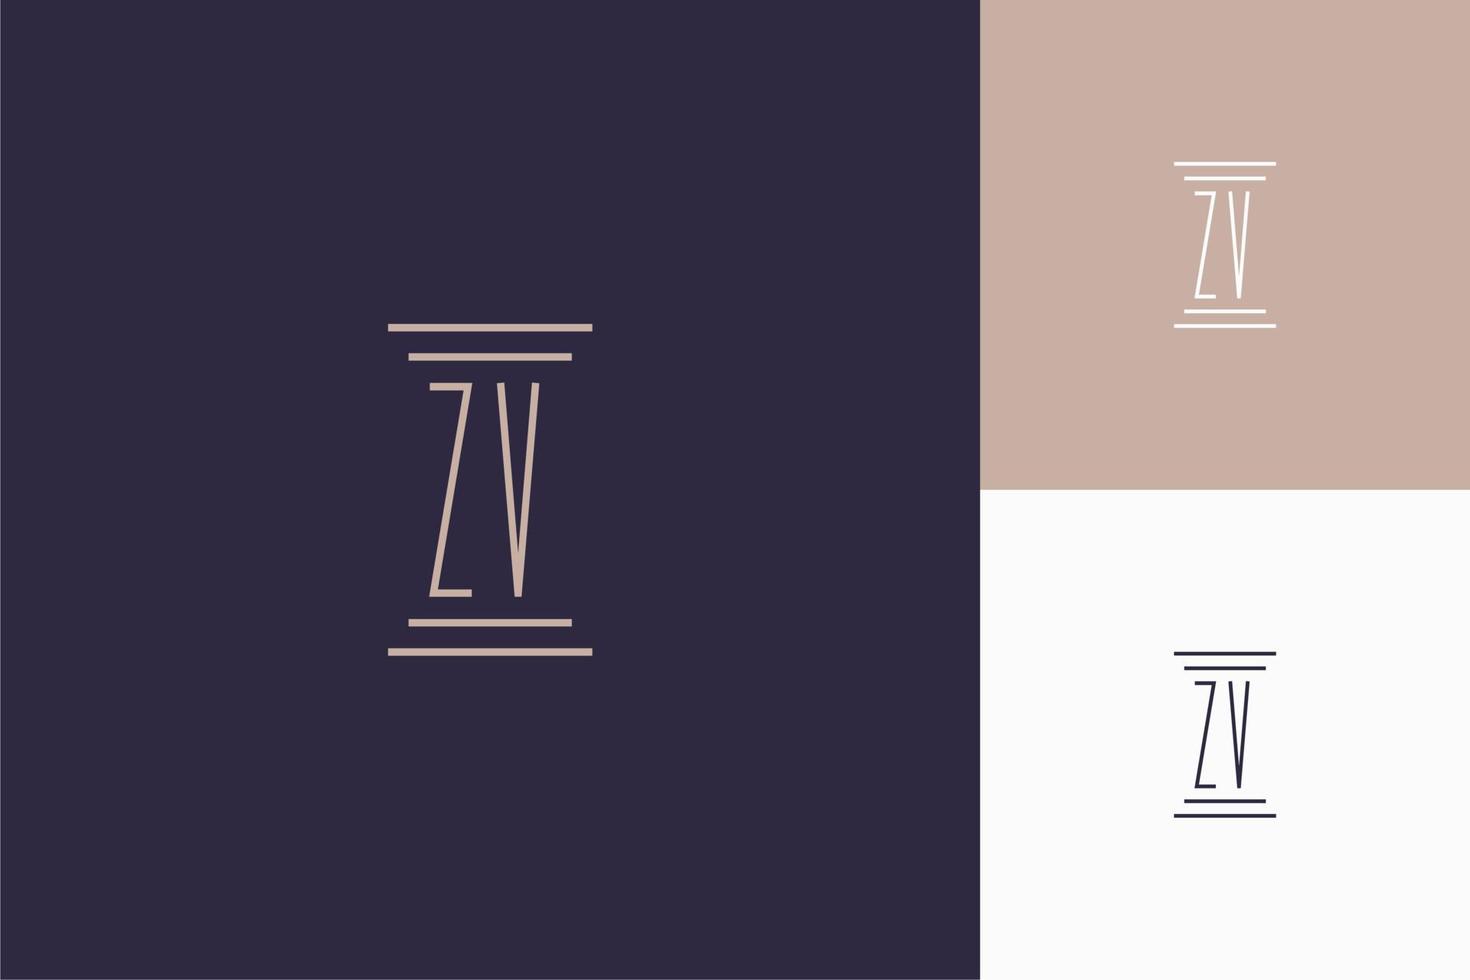 zv monogram initialer design för advokatbyråns logotyp vektor